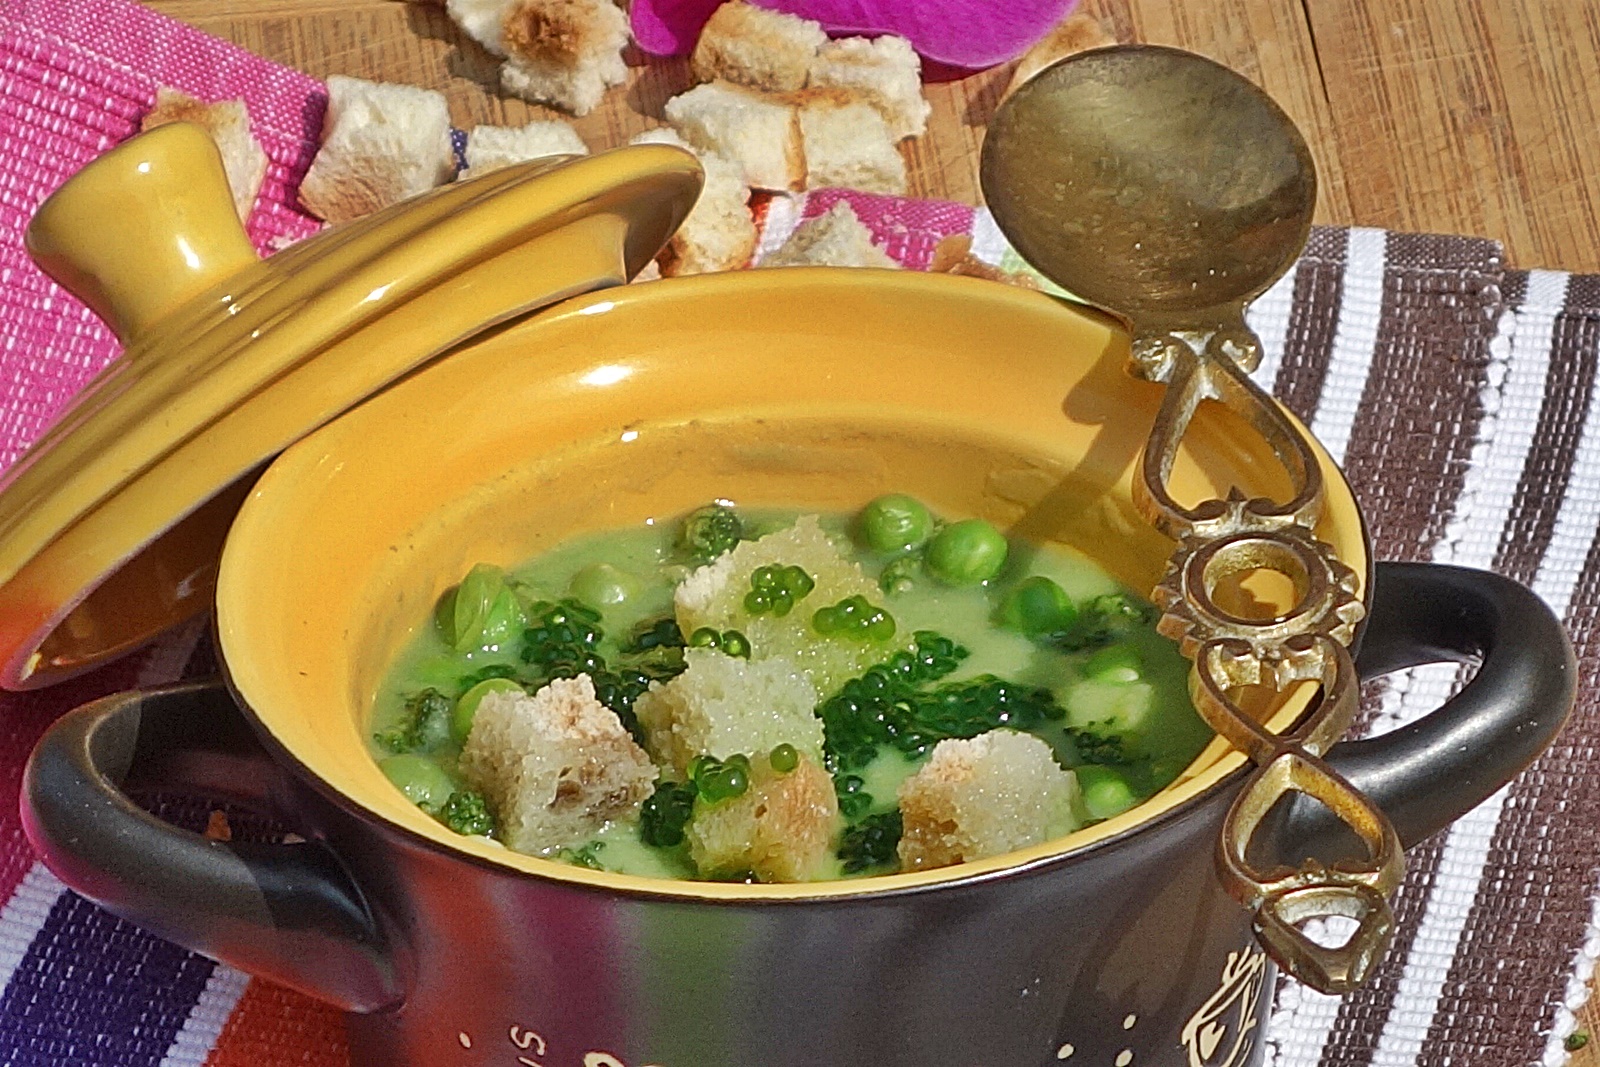 Supa crema din legume verzi